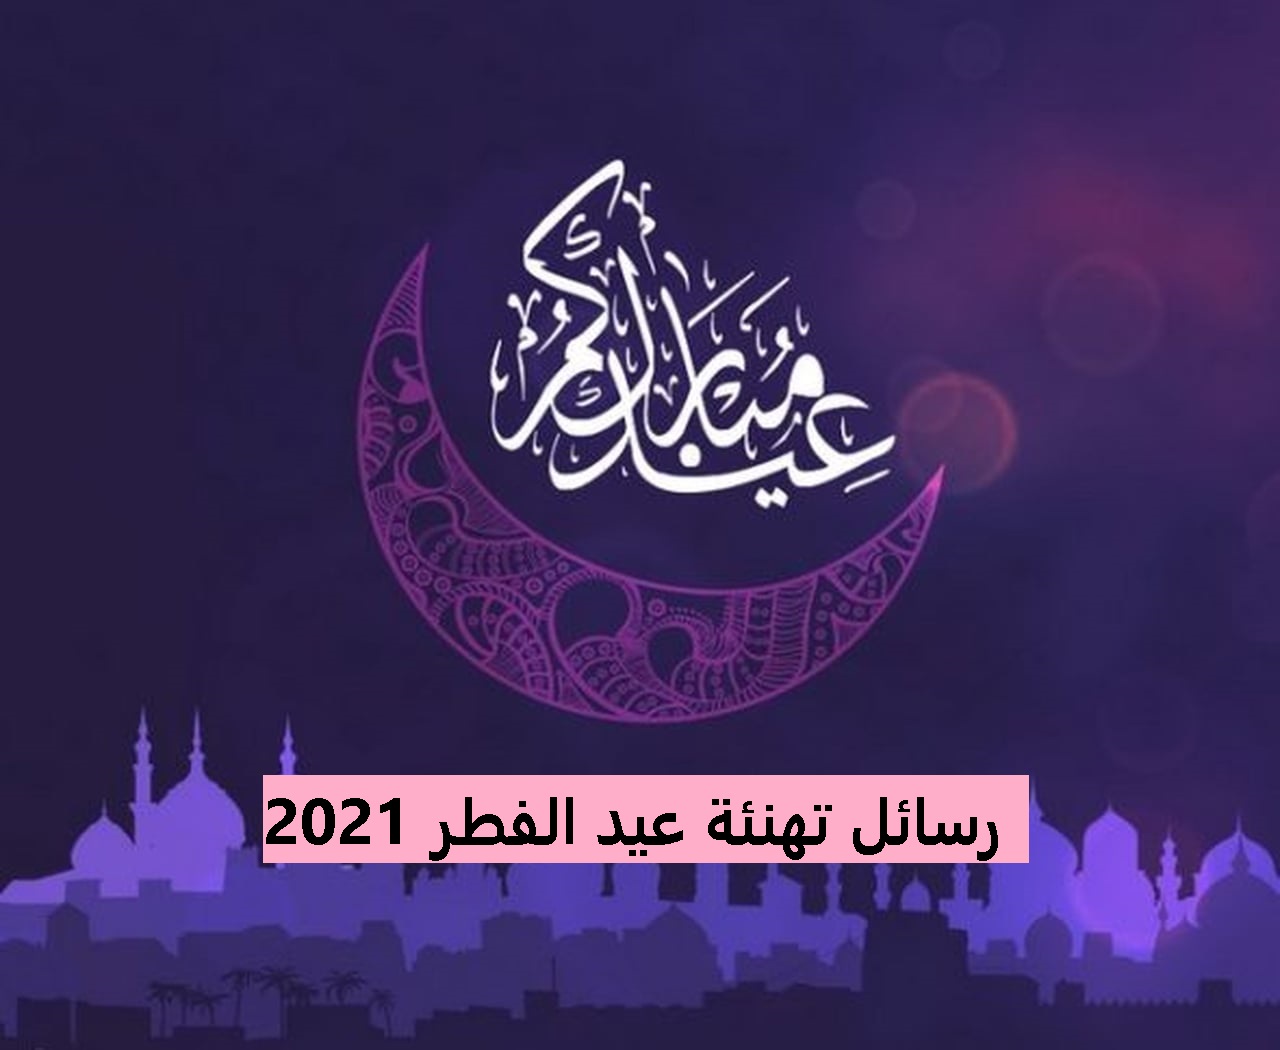 رسائل تهنئة عيد الفطر 2021 Congratulations Eid al-Fitr 2021 messages للاهل والاحبة